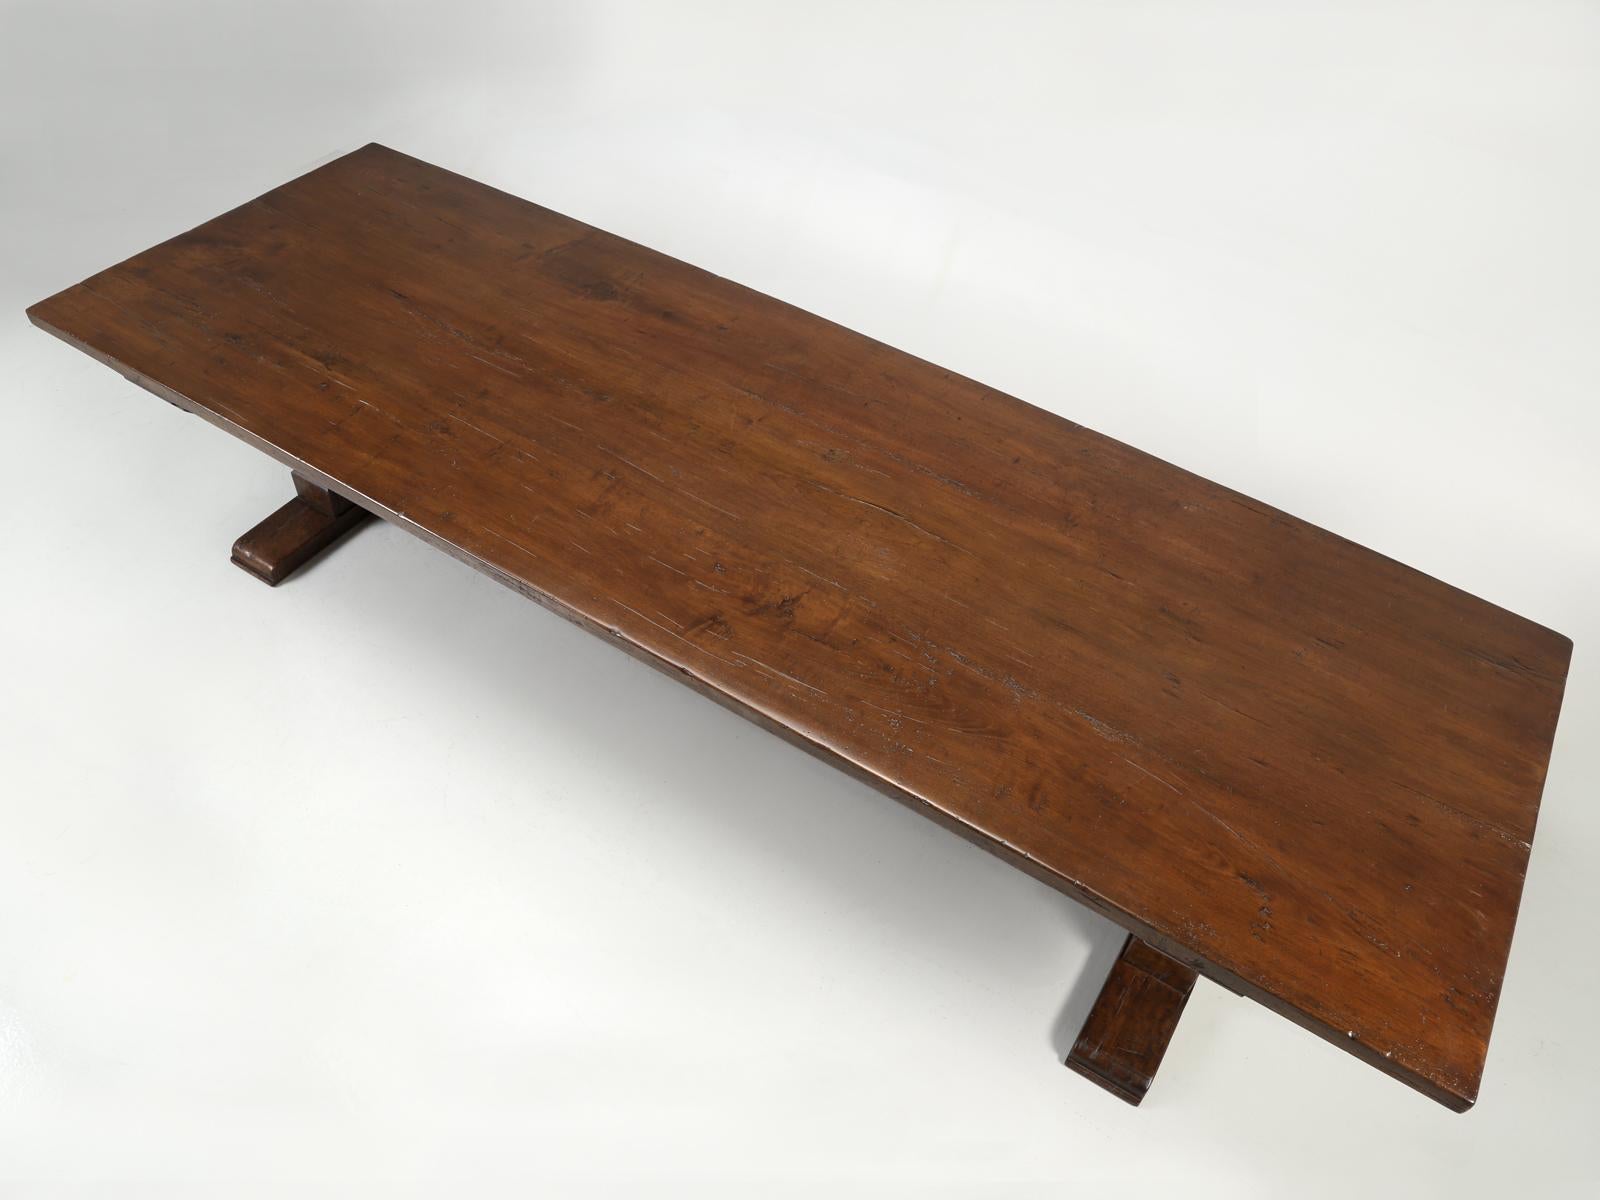 Fabriqué sur commande dans notre atelier Old Plank à partir de planches de chêne épaisses récupérées. Chaque planche de chêne est cannelée pour garantir que la table de salle à manger à tréteaux durera 100 ans et qu'elle pourra être transmise à